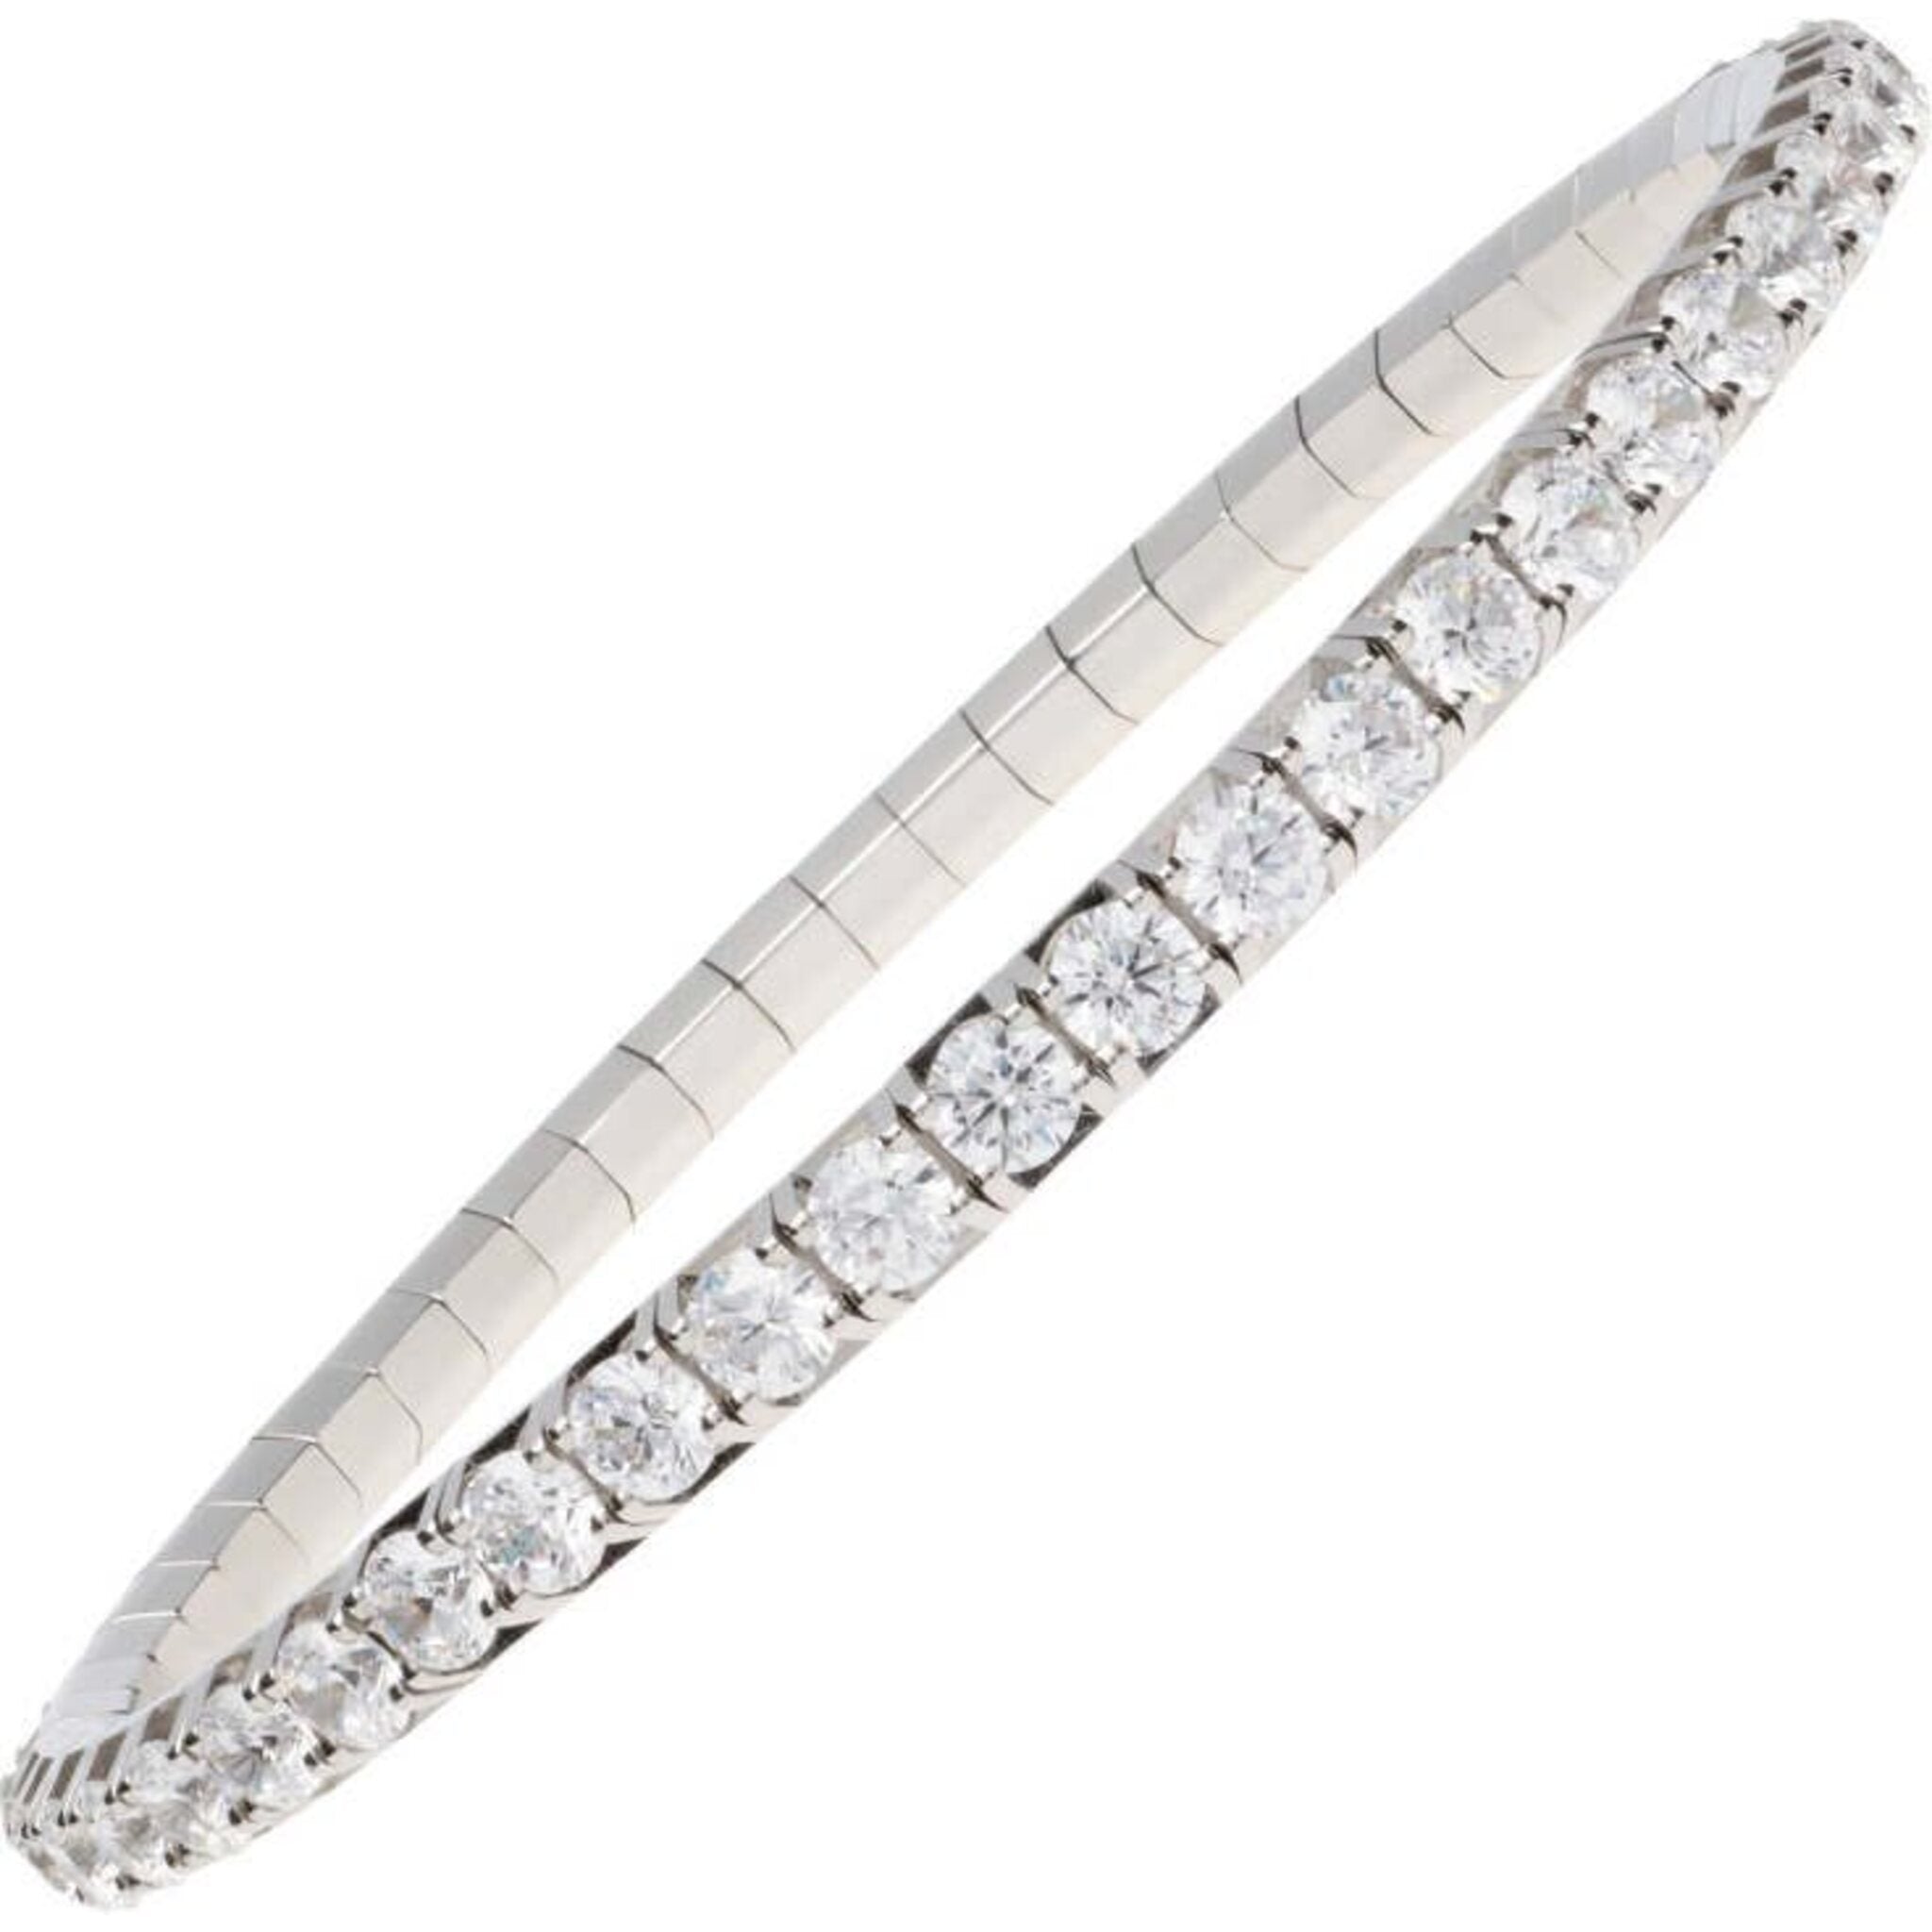 Solid 14K White Gold 1.26 Carat Diamonds Tennis Bracelet for Women Bangle  Design 018336